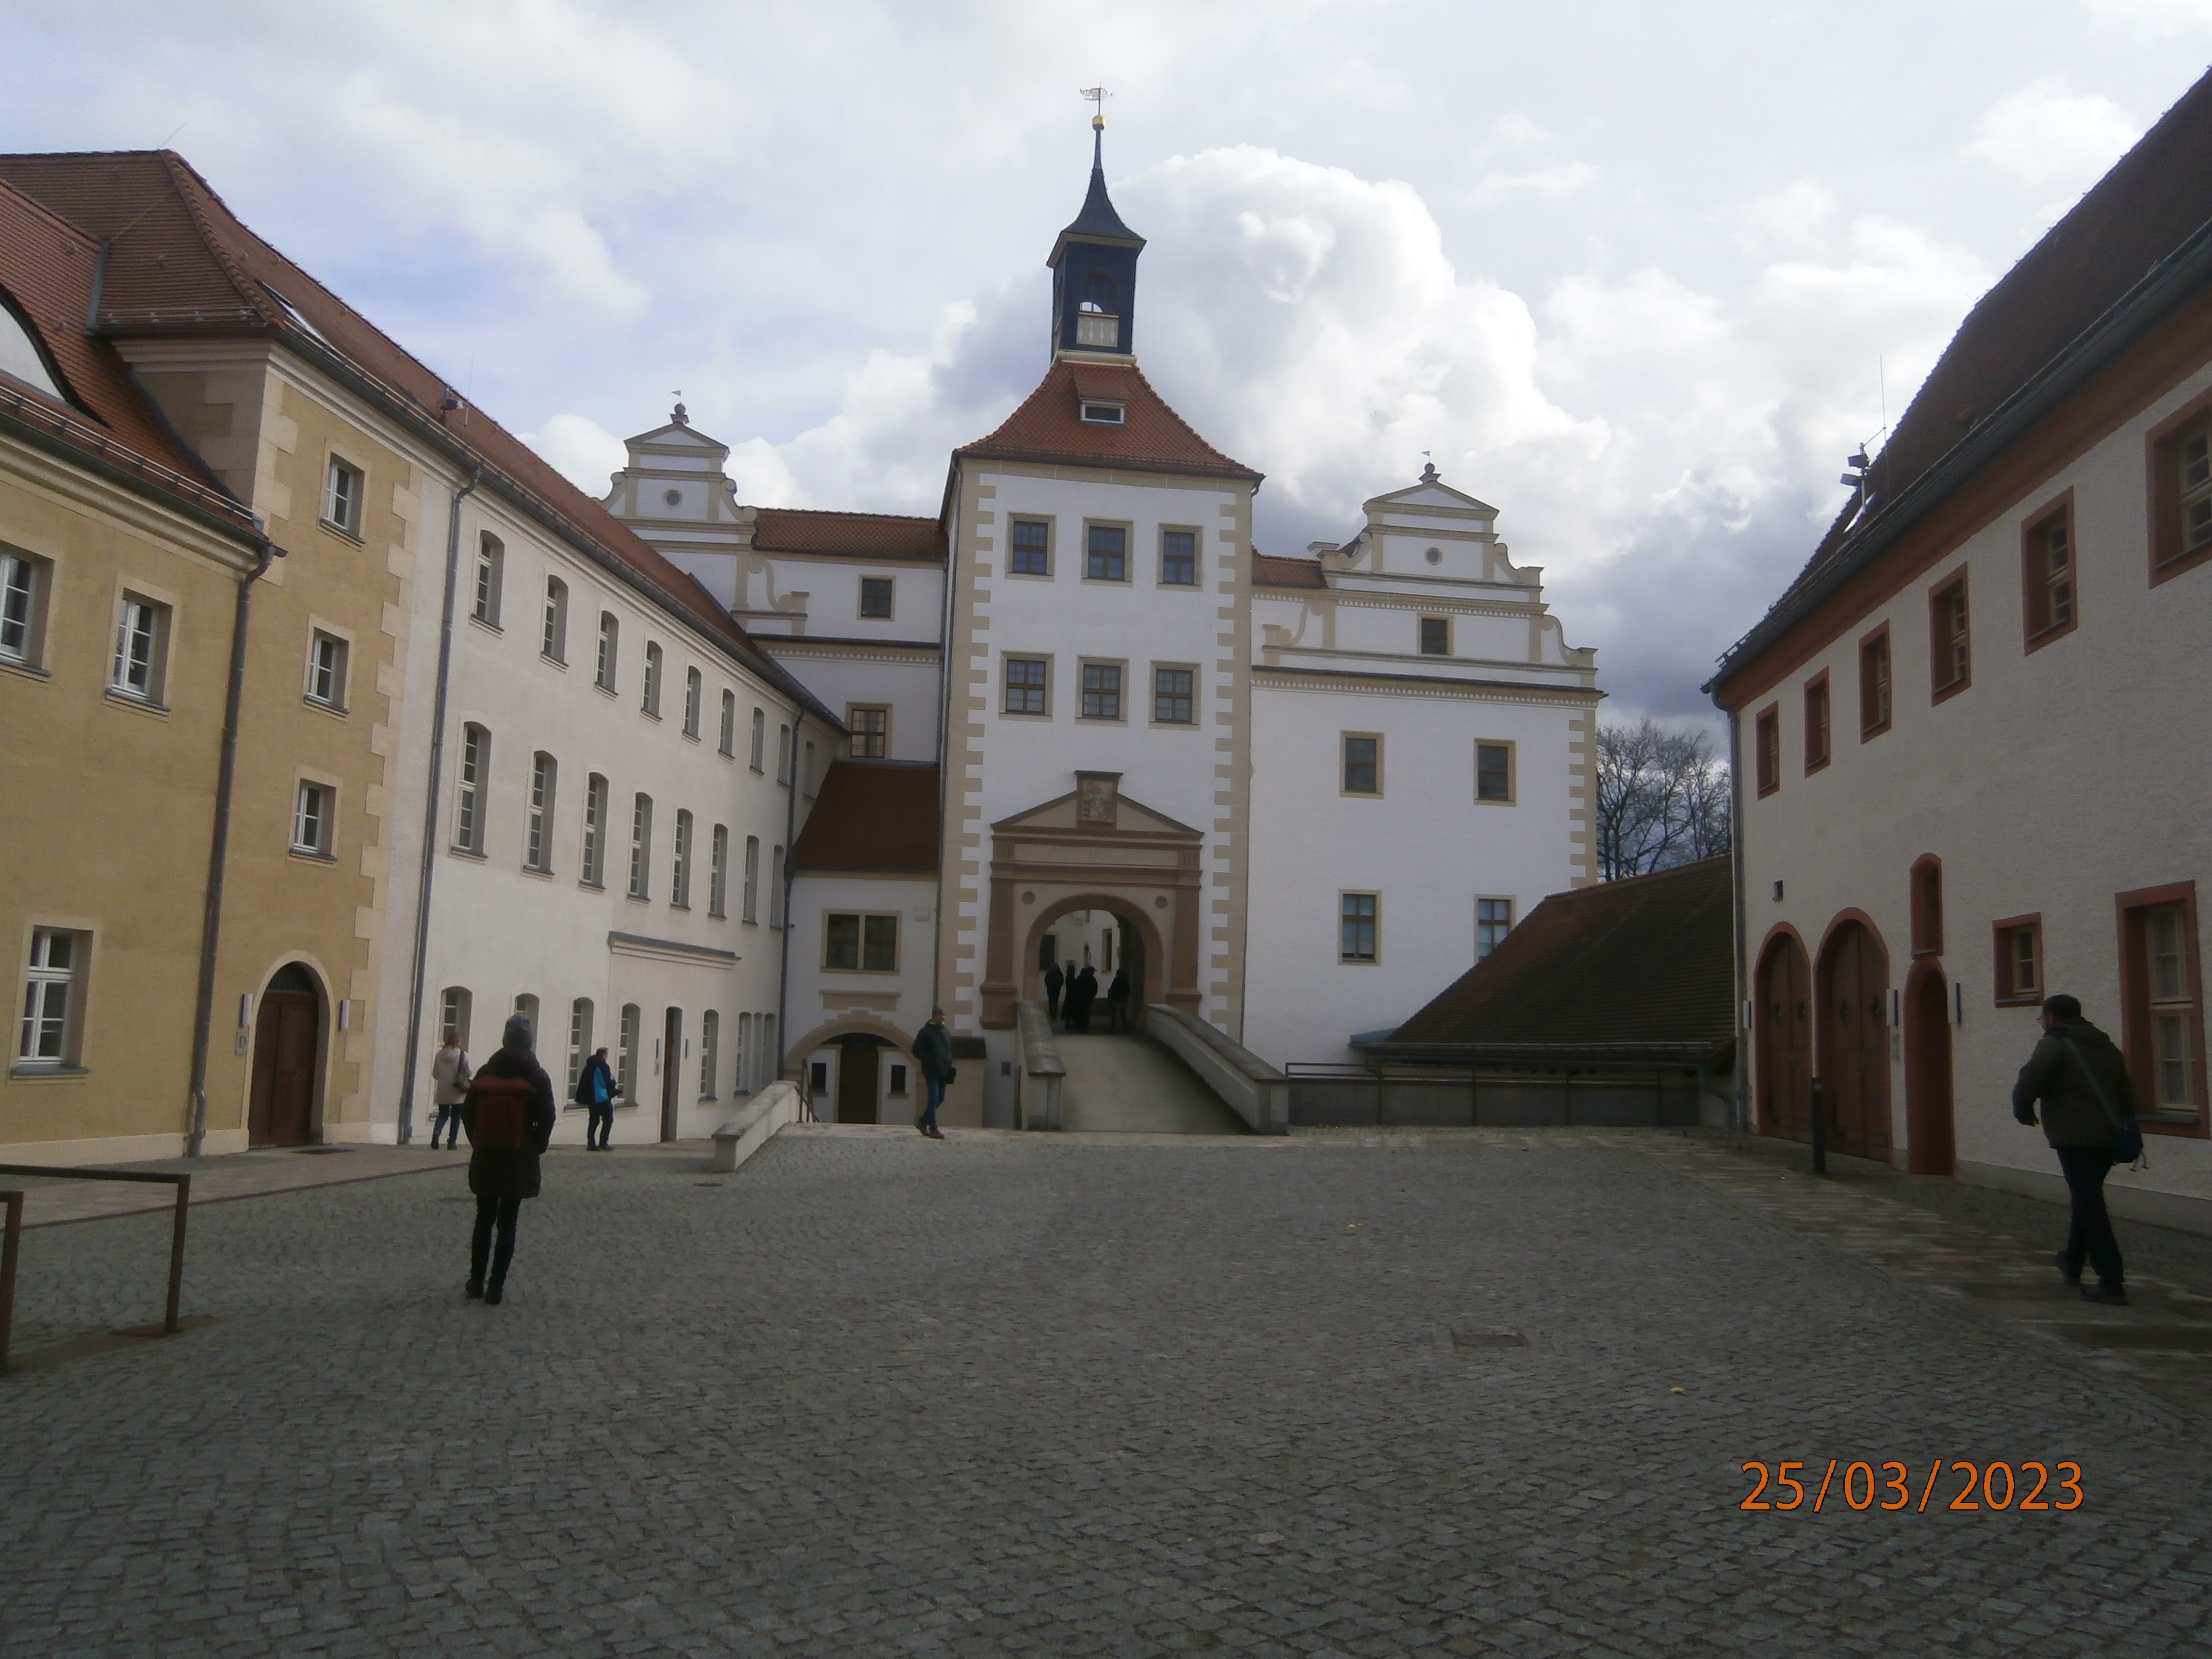 Schloss Finsterwalde